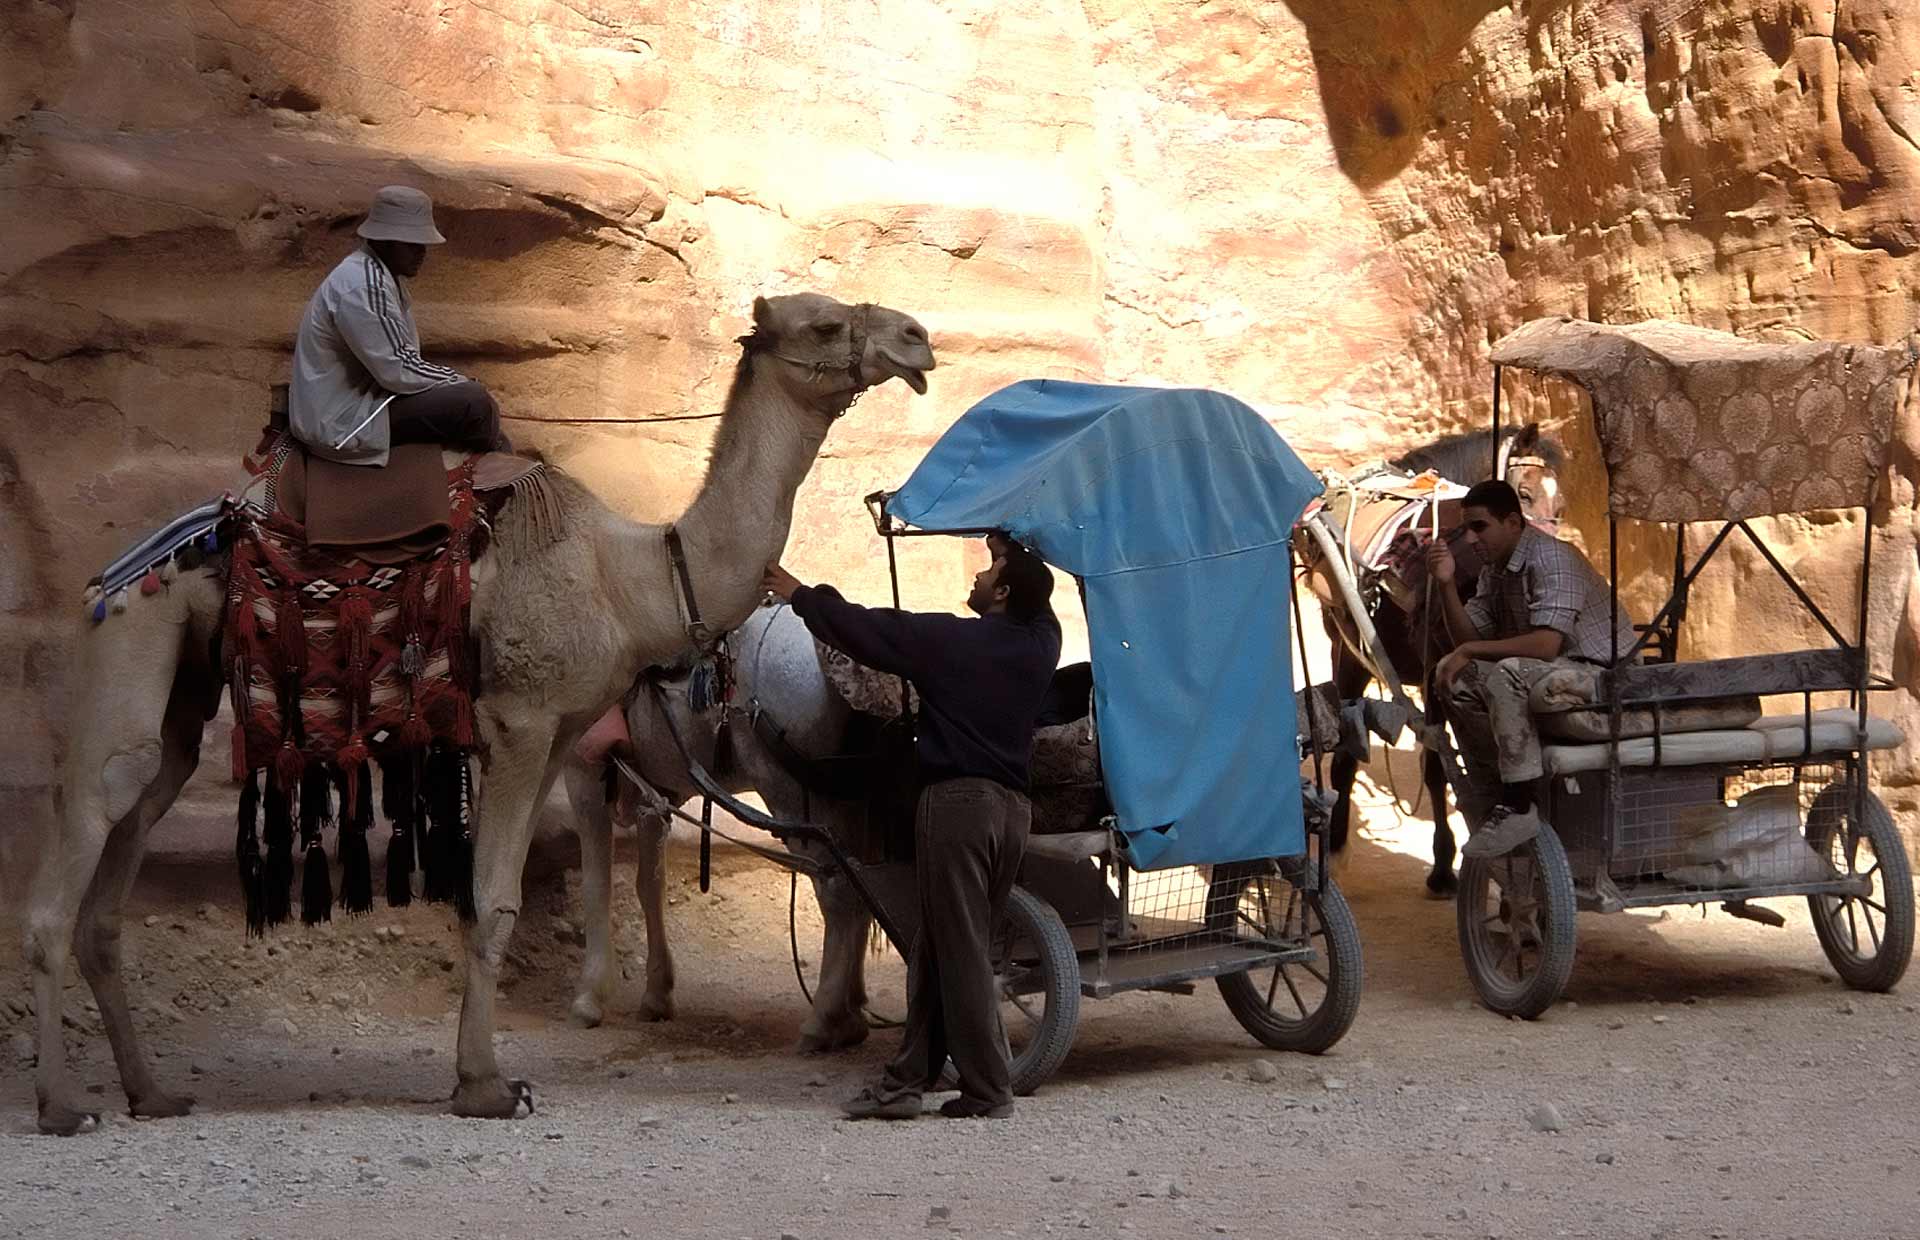 Bedouin man on a camel and horse carriages, Petra, Jordan